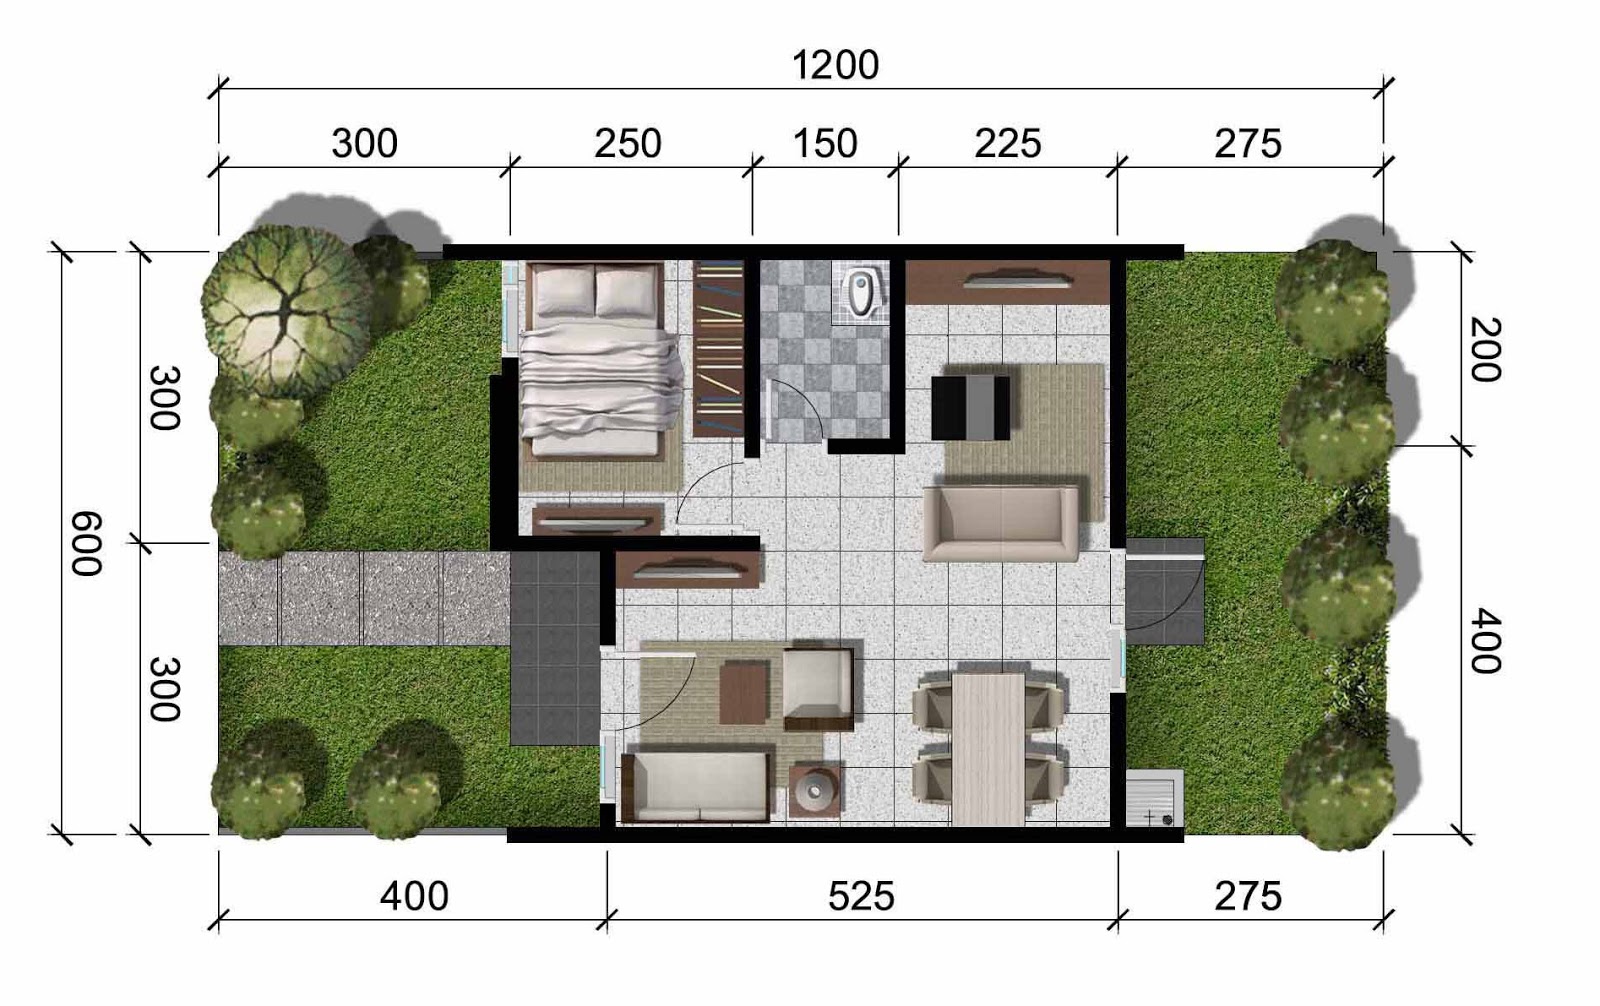  Desain Dan Denah Rumah Minimalis Ukuran 6x12  Wallpaper 